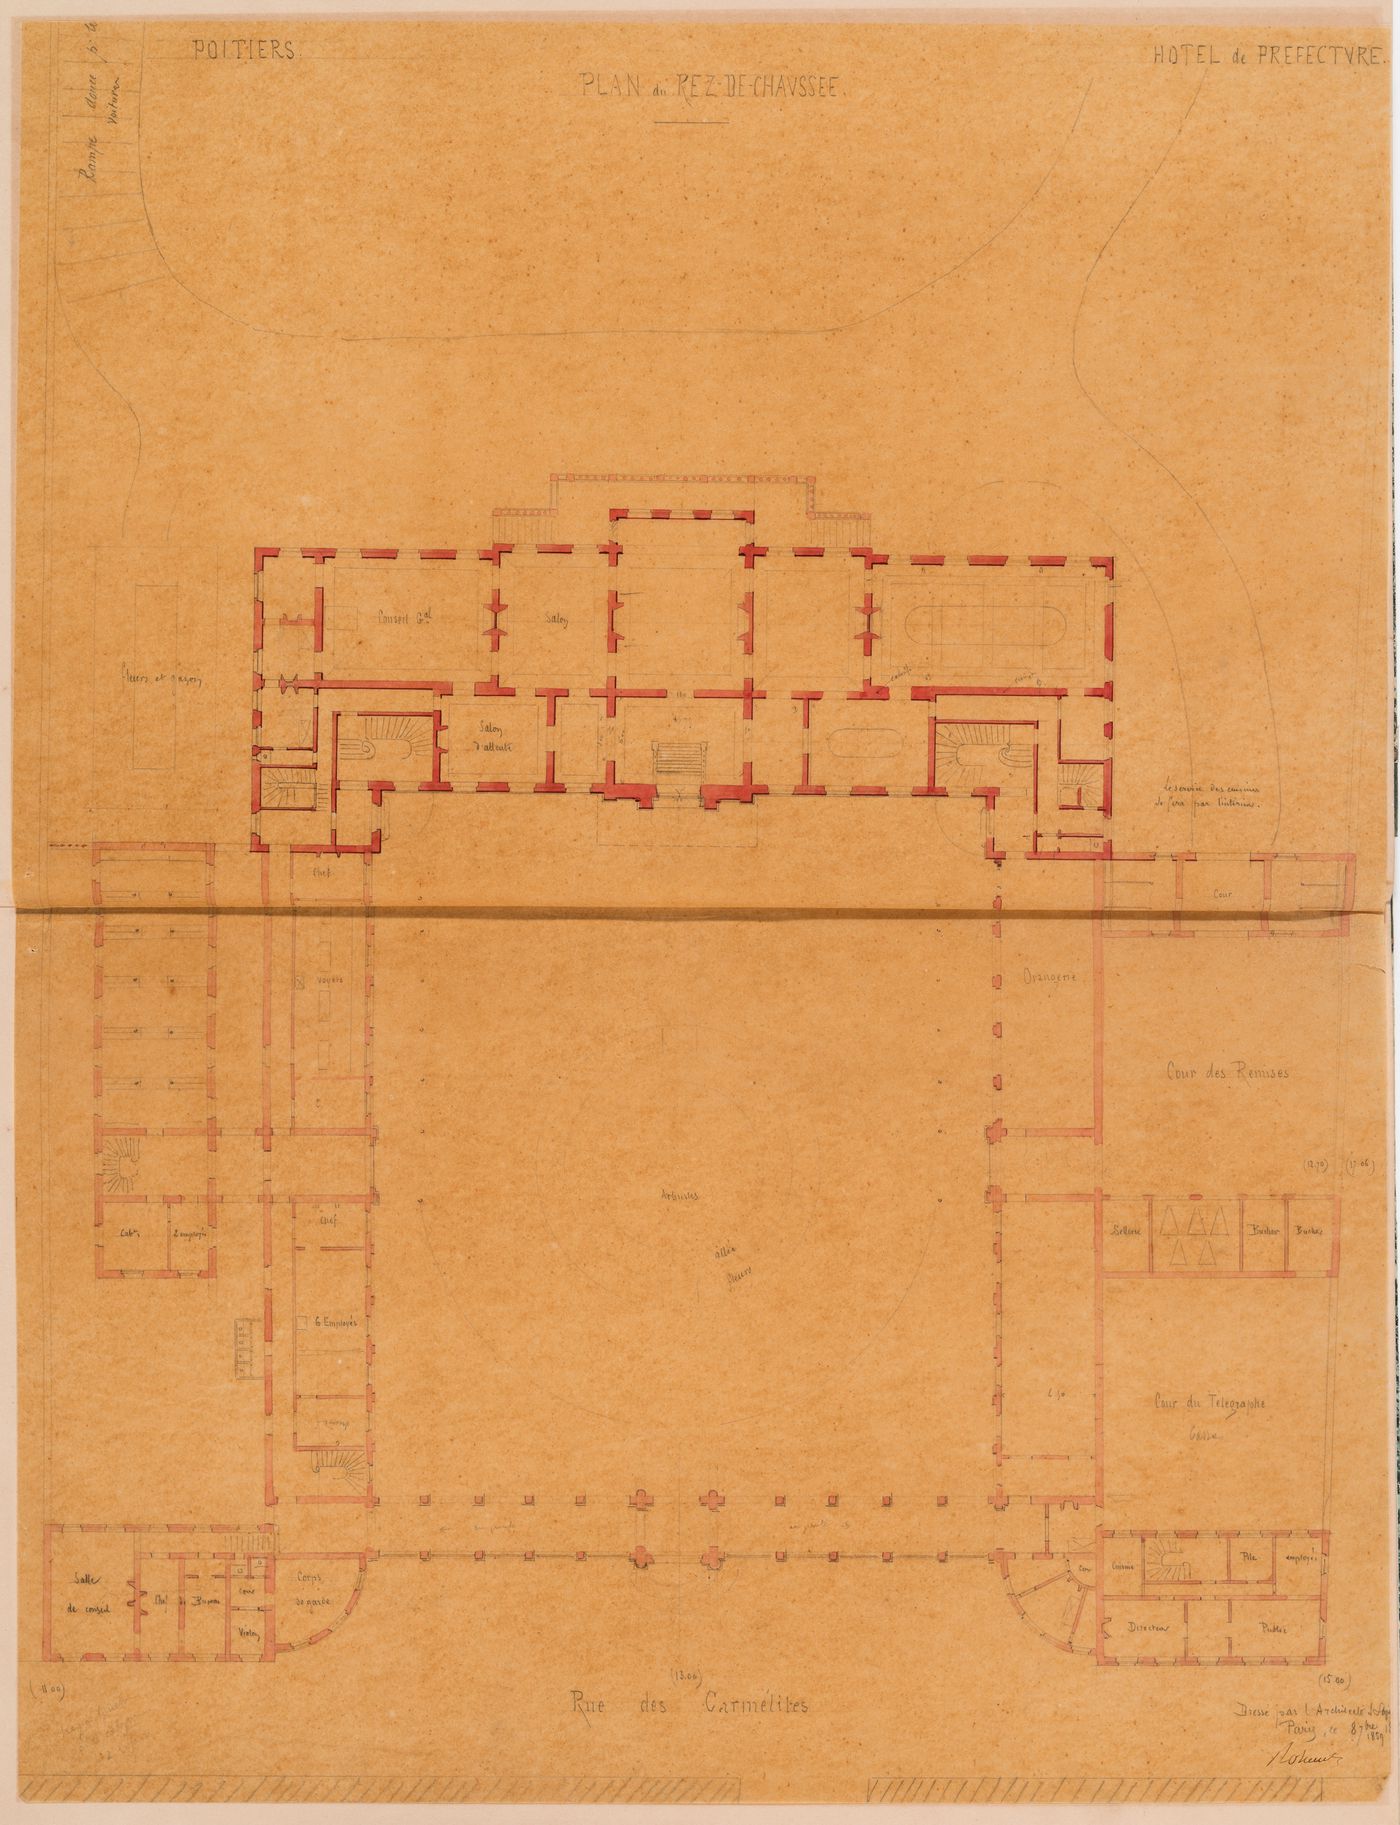 Project for a Hôtel de préfecture, Poitiers: Ground floor plan